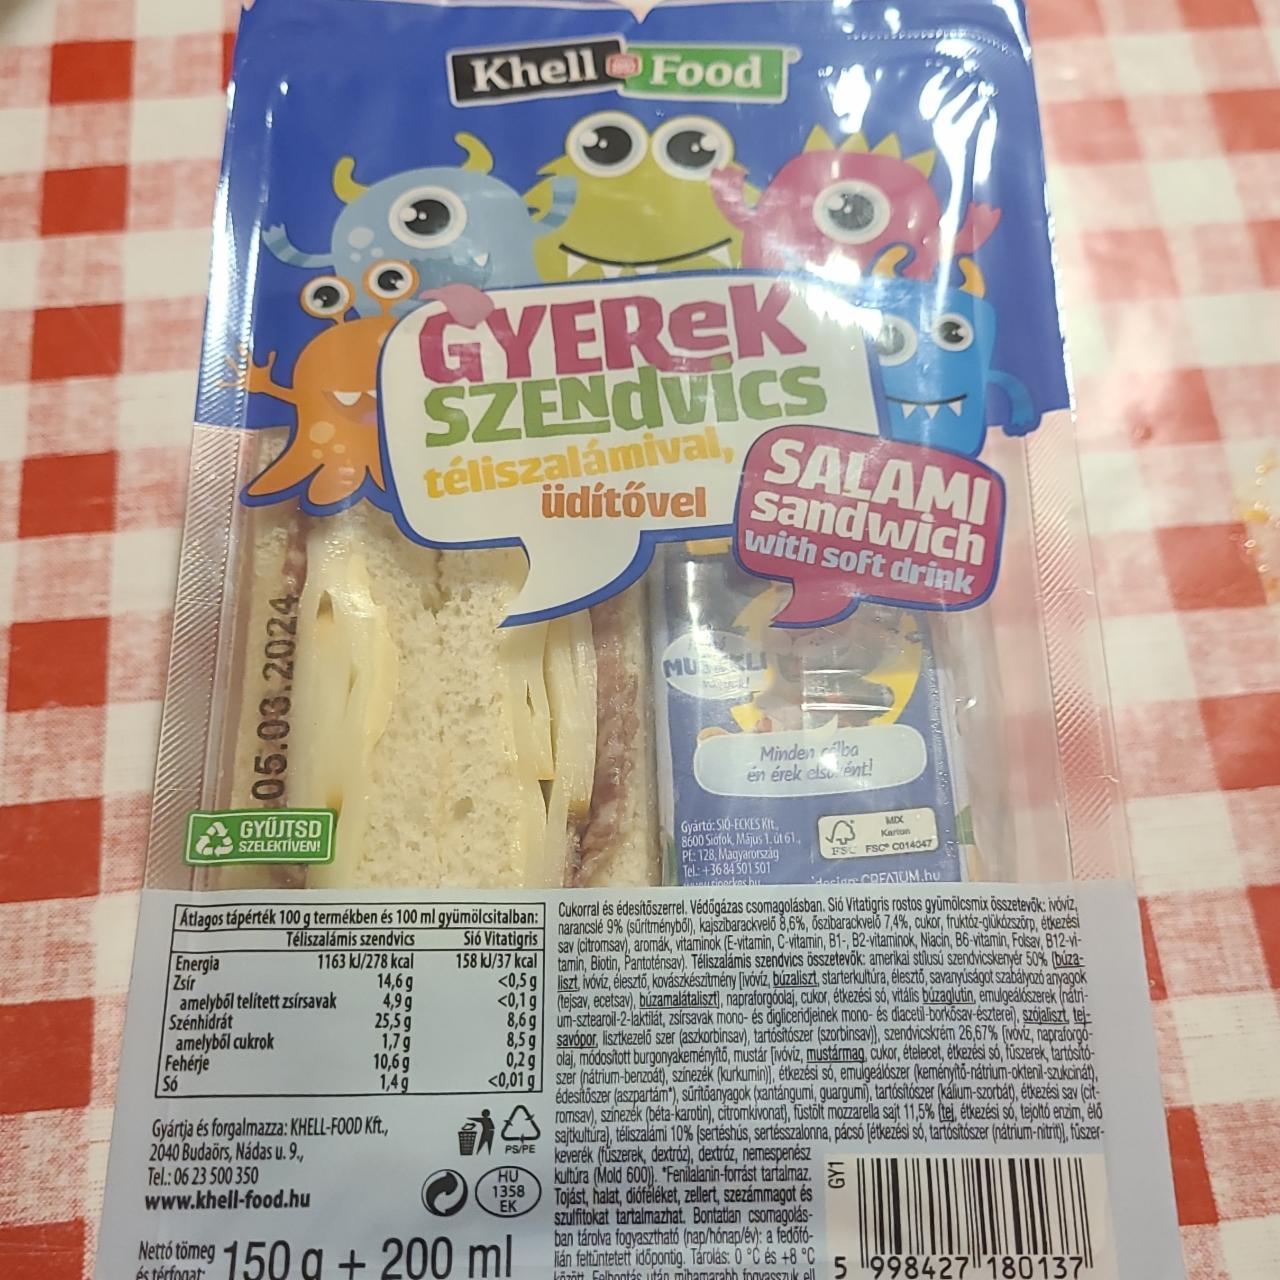 Képek - Gyerek szendvics téliszalámival, üditővel Khell food